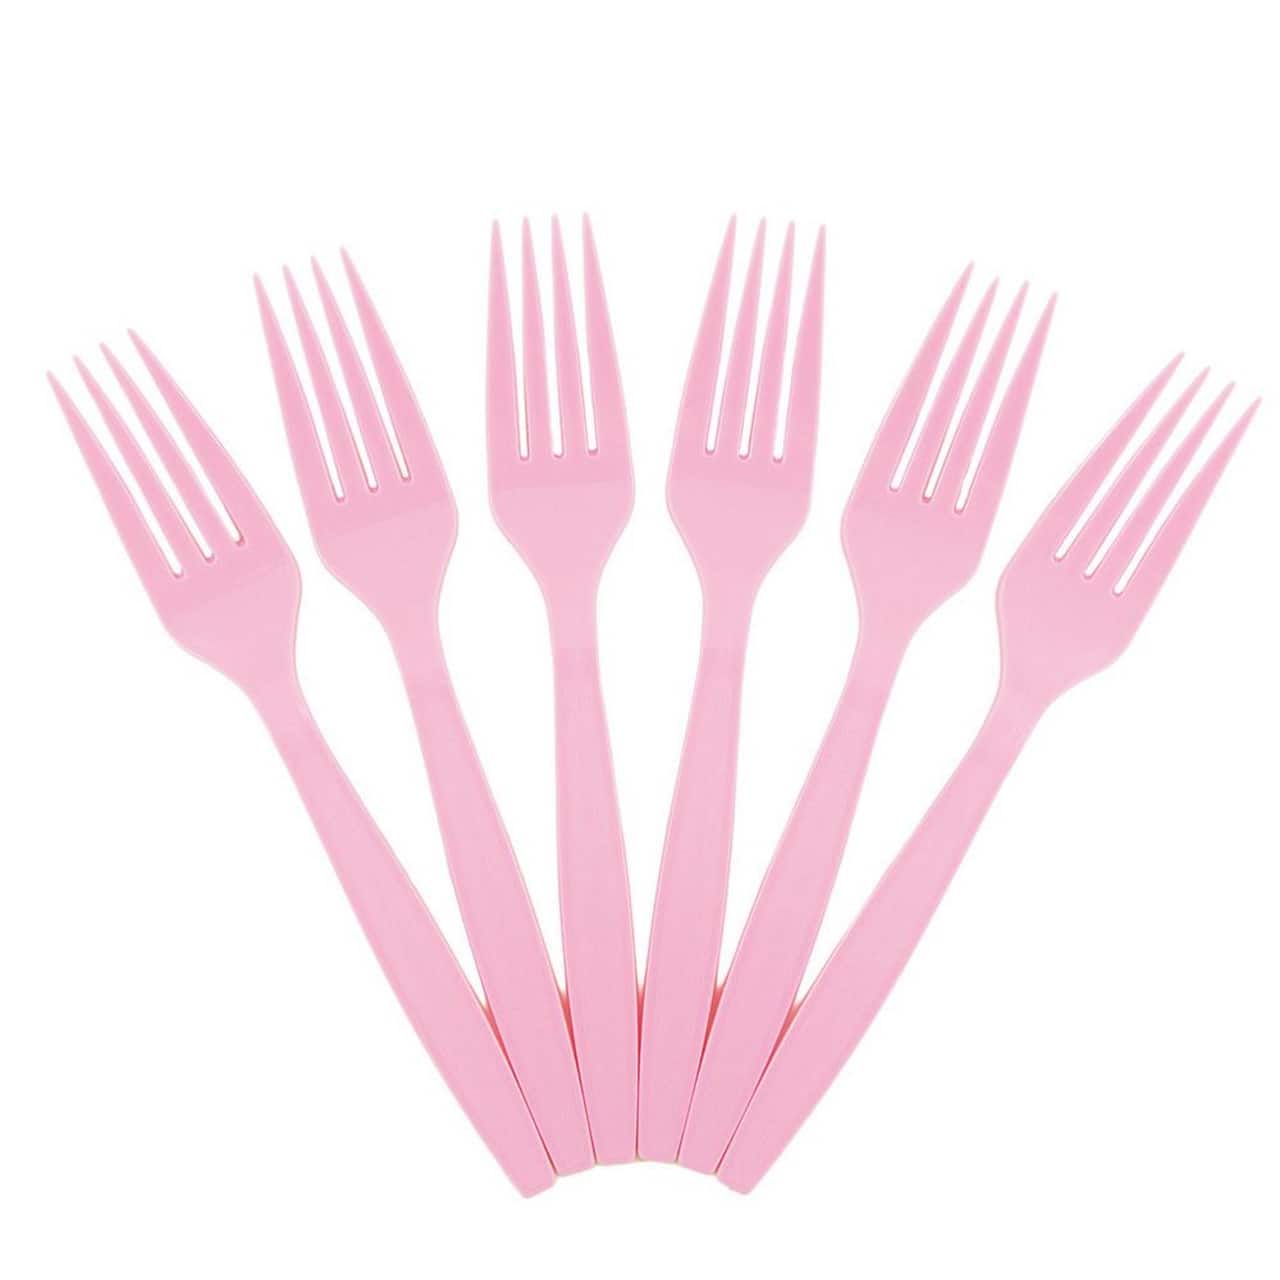 JAM Paper Pink Premium Plastic Forks, 100ct.